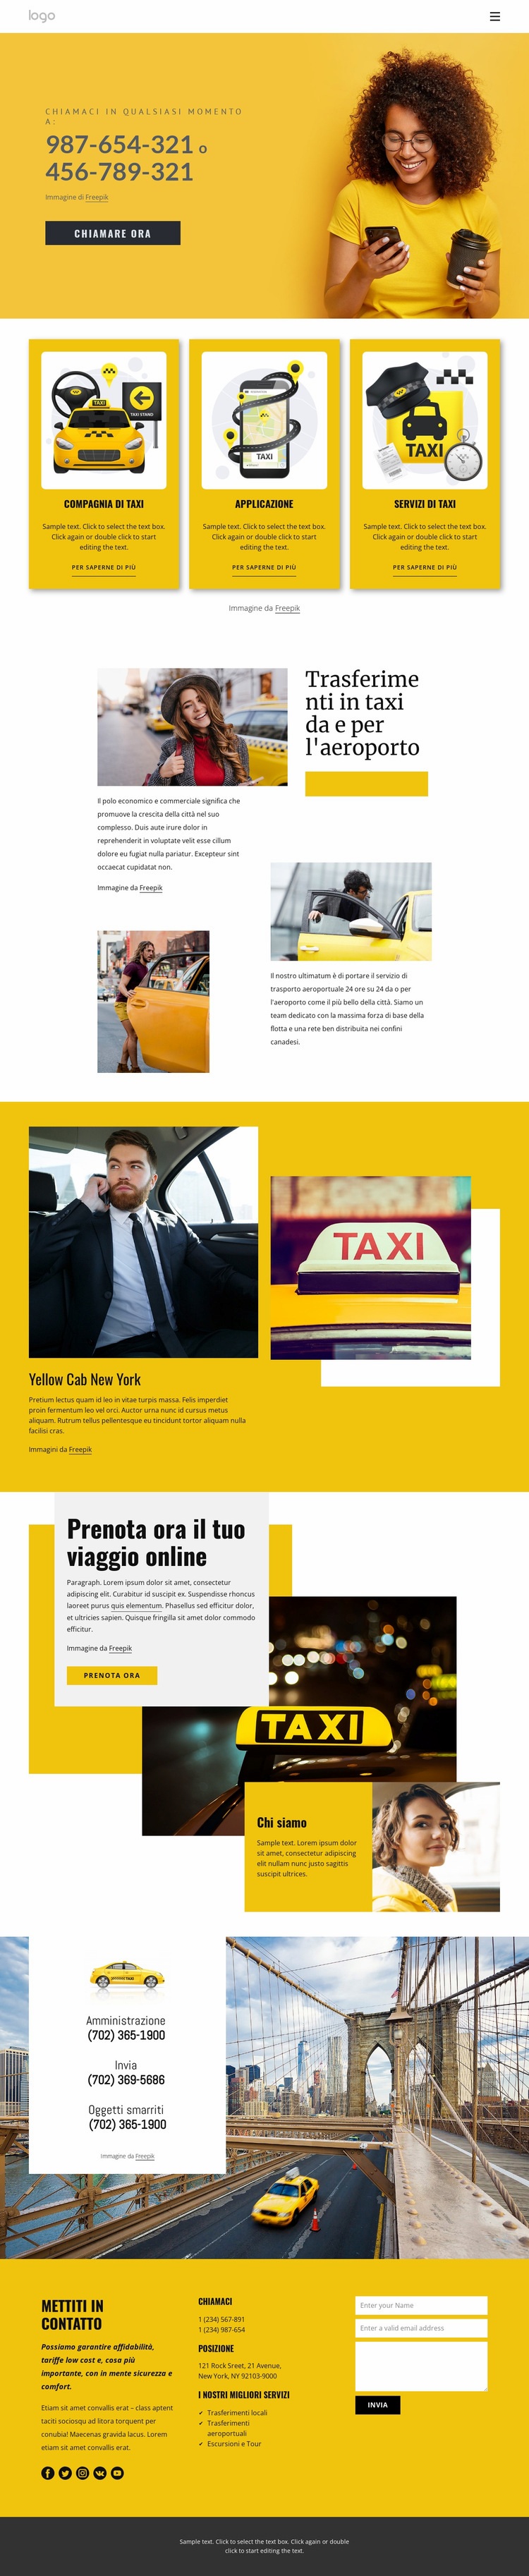 Servizio taxi di qualità Costruttore di siti web HTML